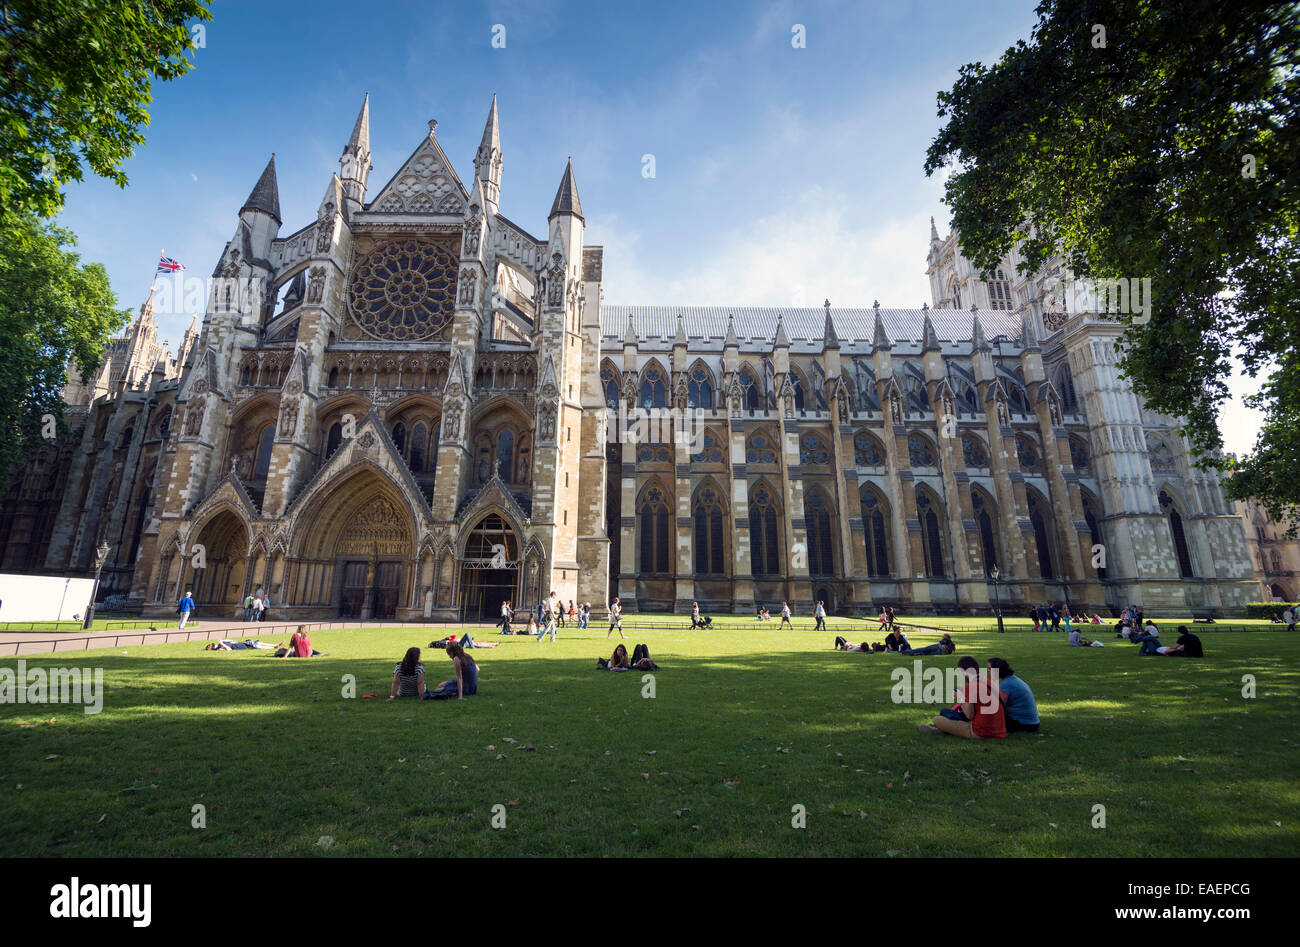 Londres - Junio 6, 2014: La Abadía de Westminster, es una gran iglesia gótica principalmente,es el lugar tradicional de coronación y de entierro Foto de stock